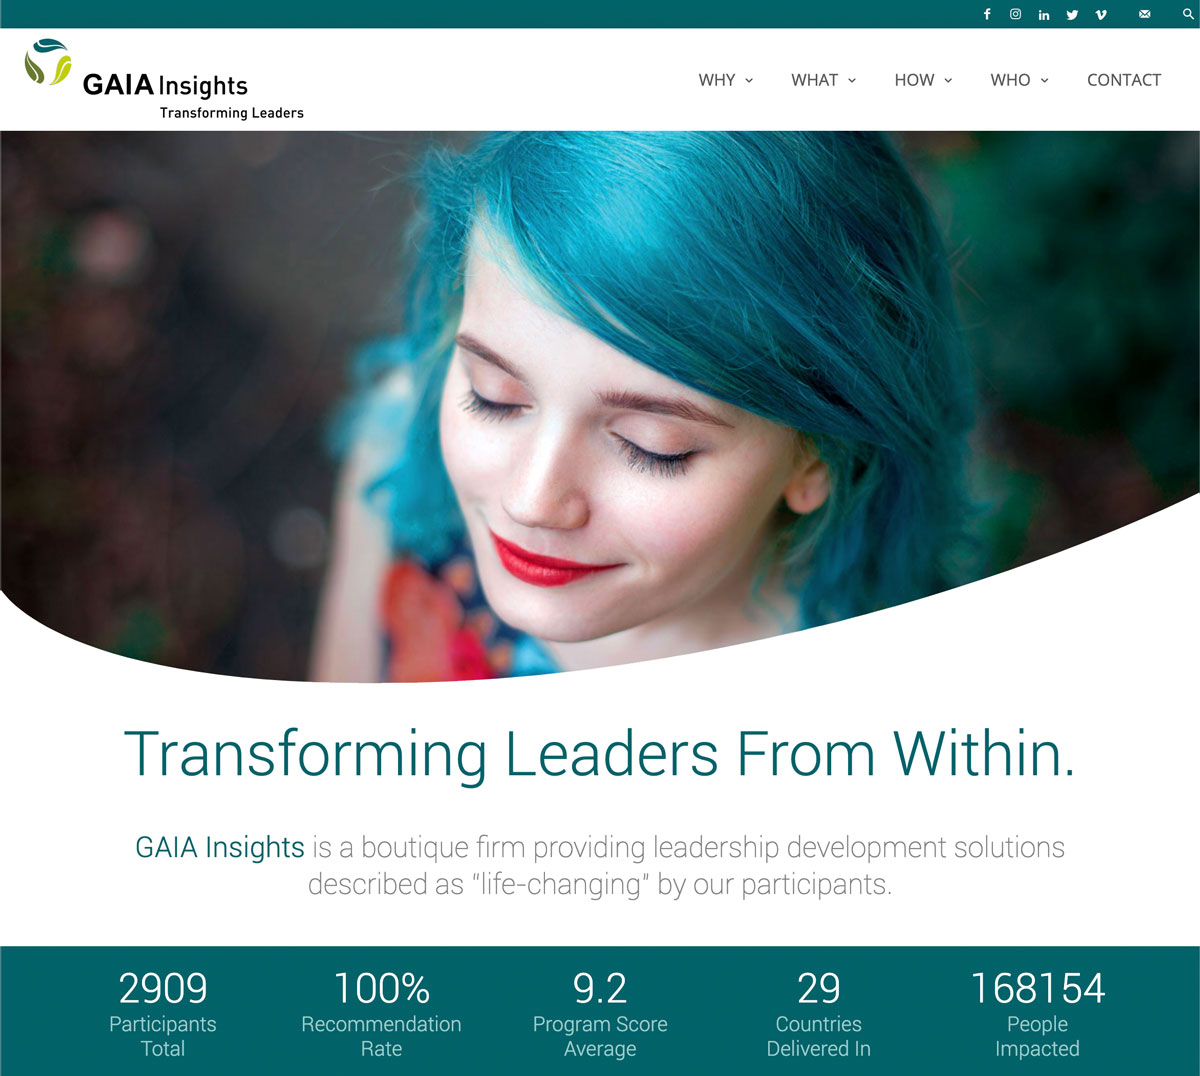 (c) Gaia-insights.com